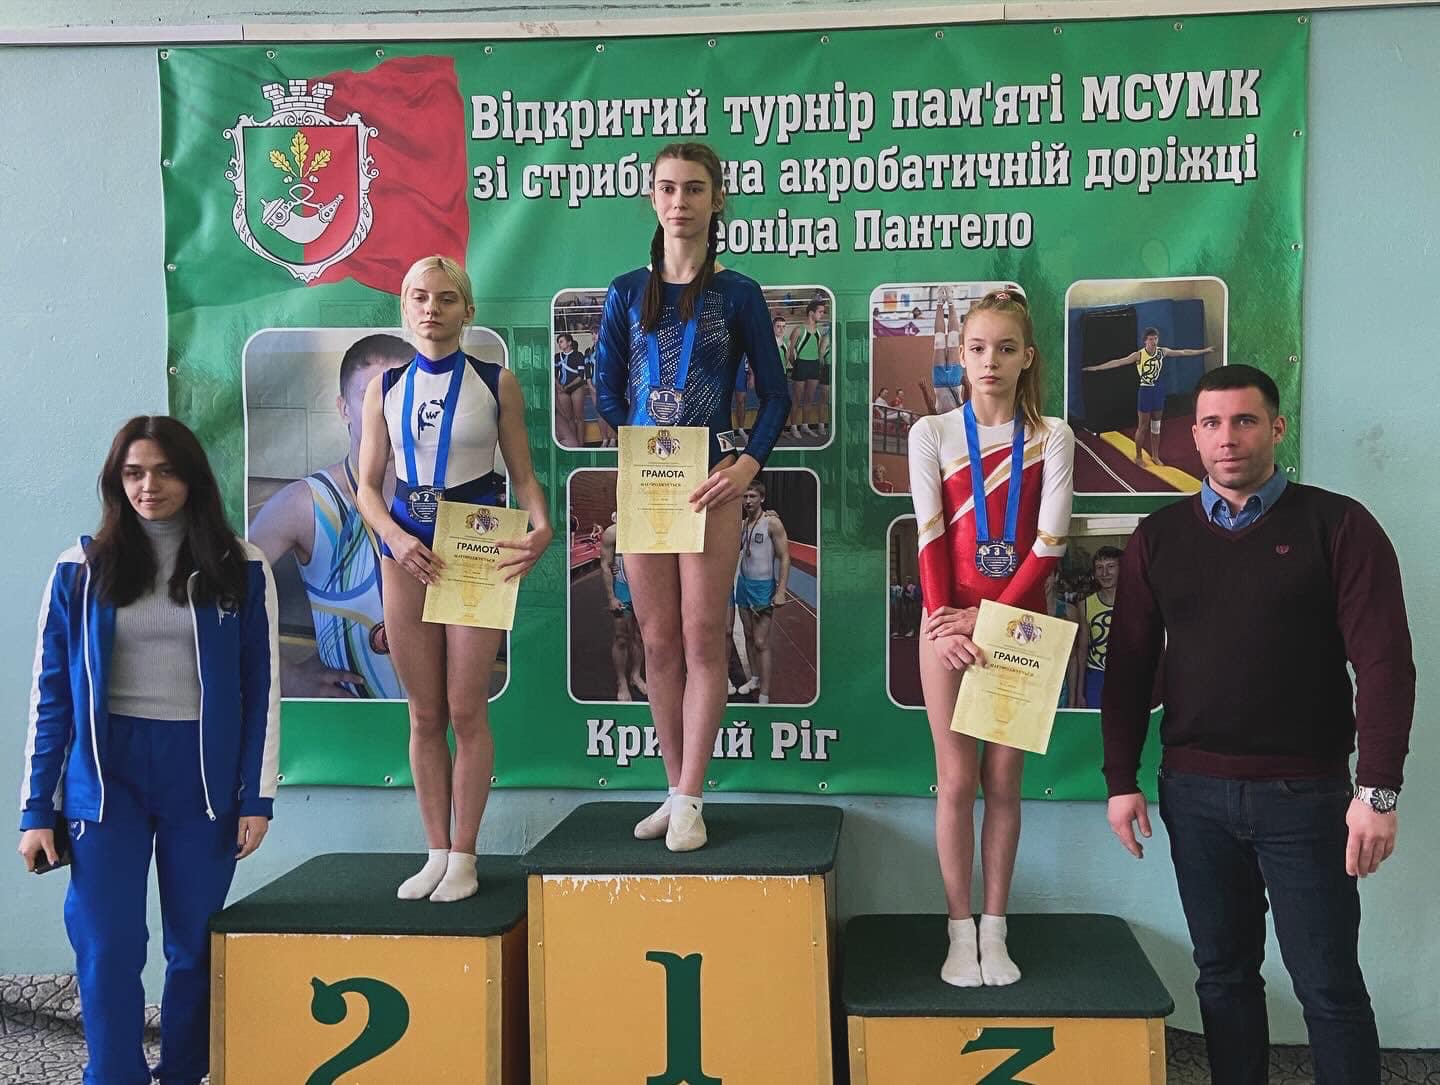 7 та 8 лютого у місті Кривий Ріг пройшов чемпіонат Дніпропетровської області зі стрибків на акробатичній доріжці.